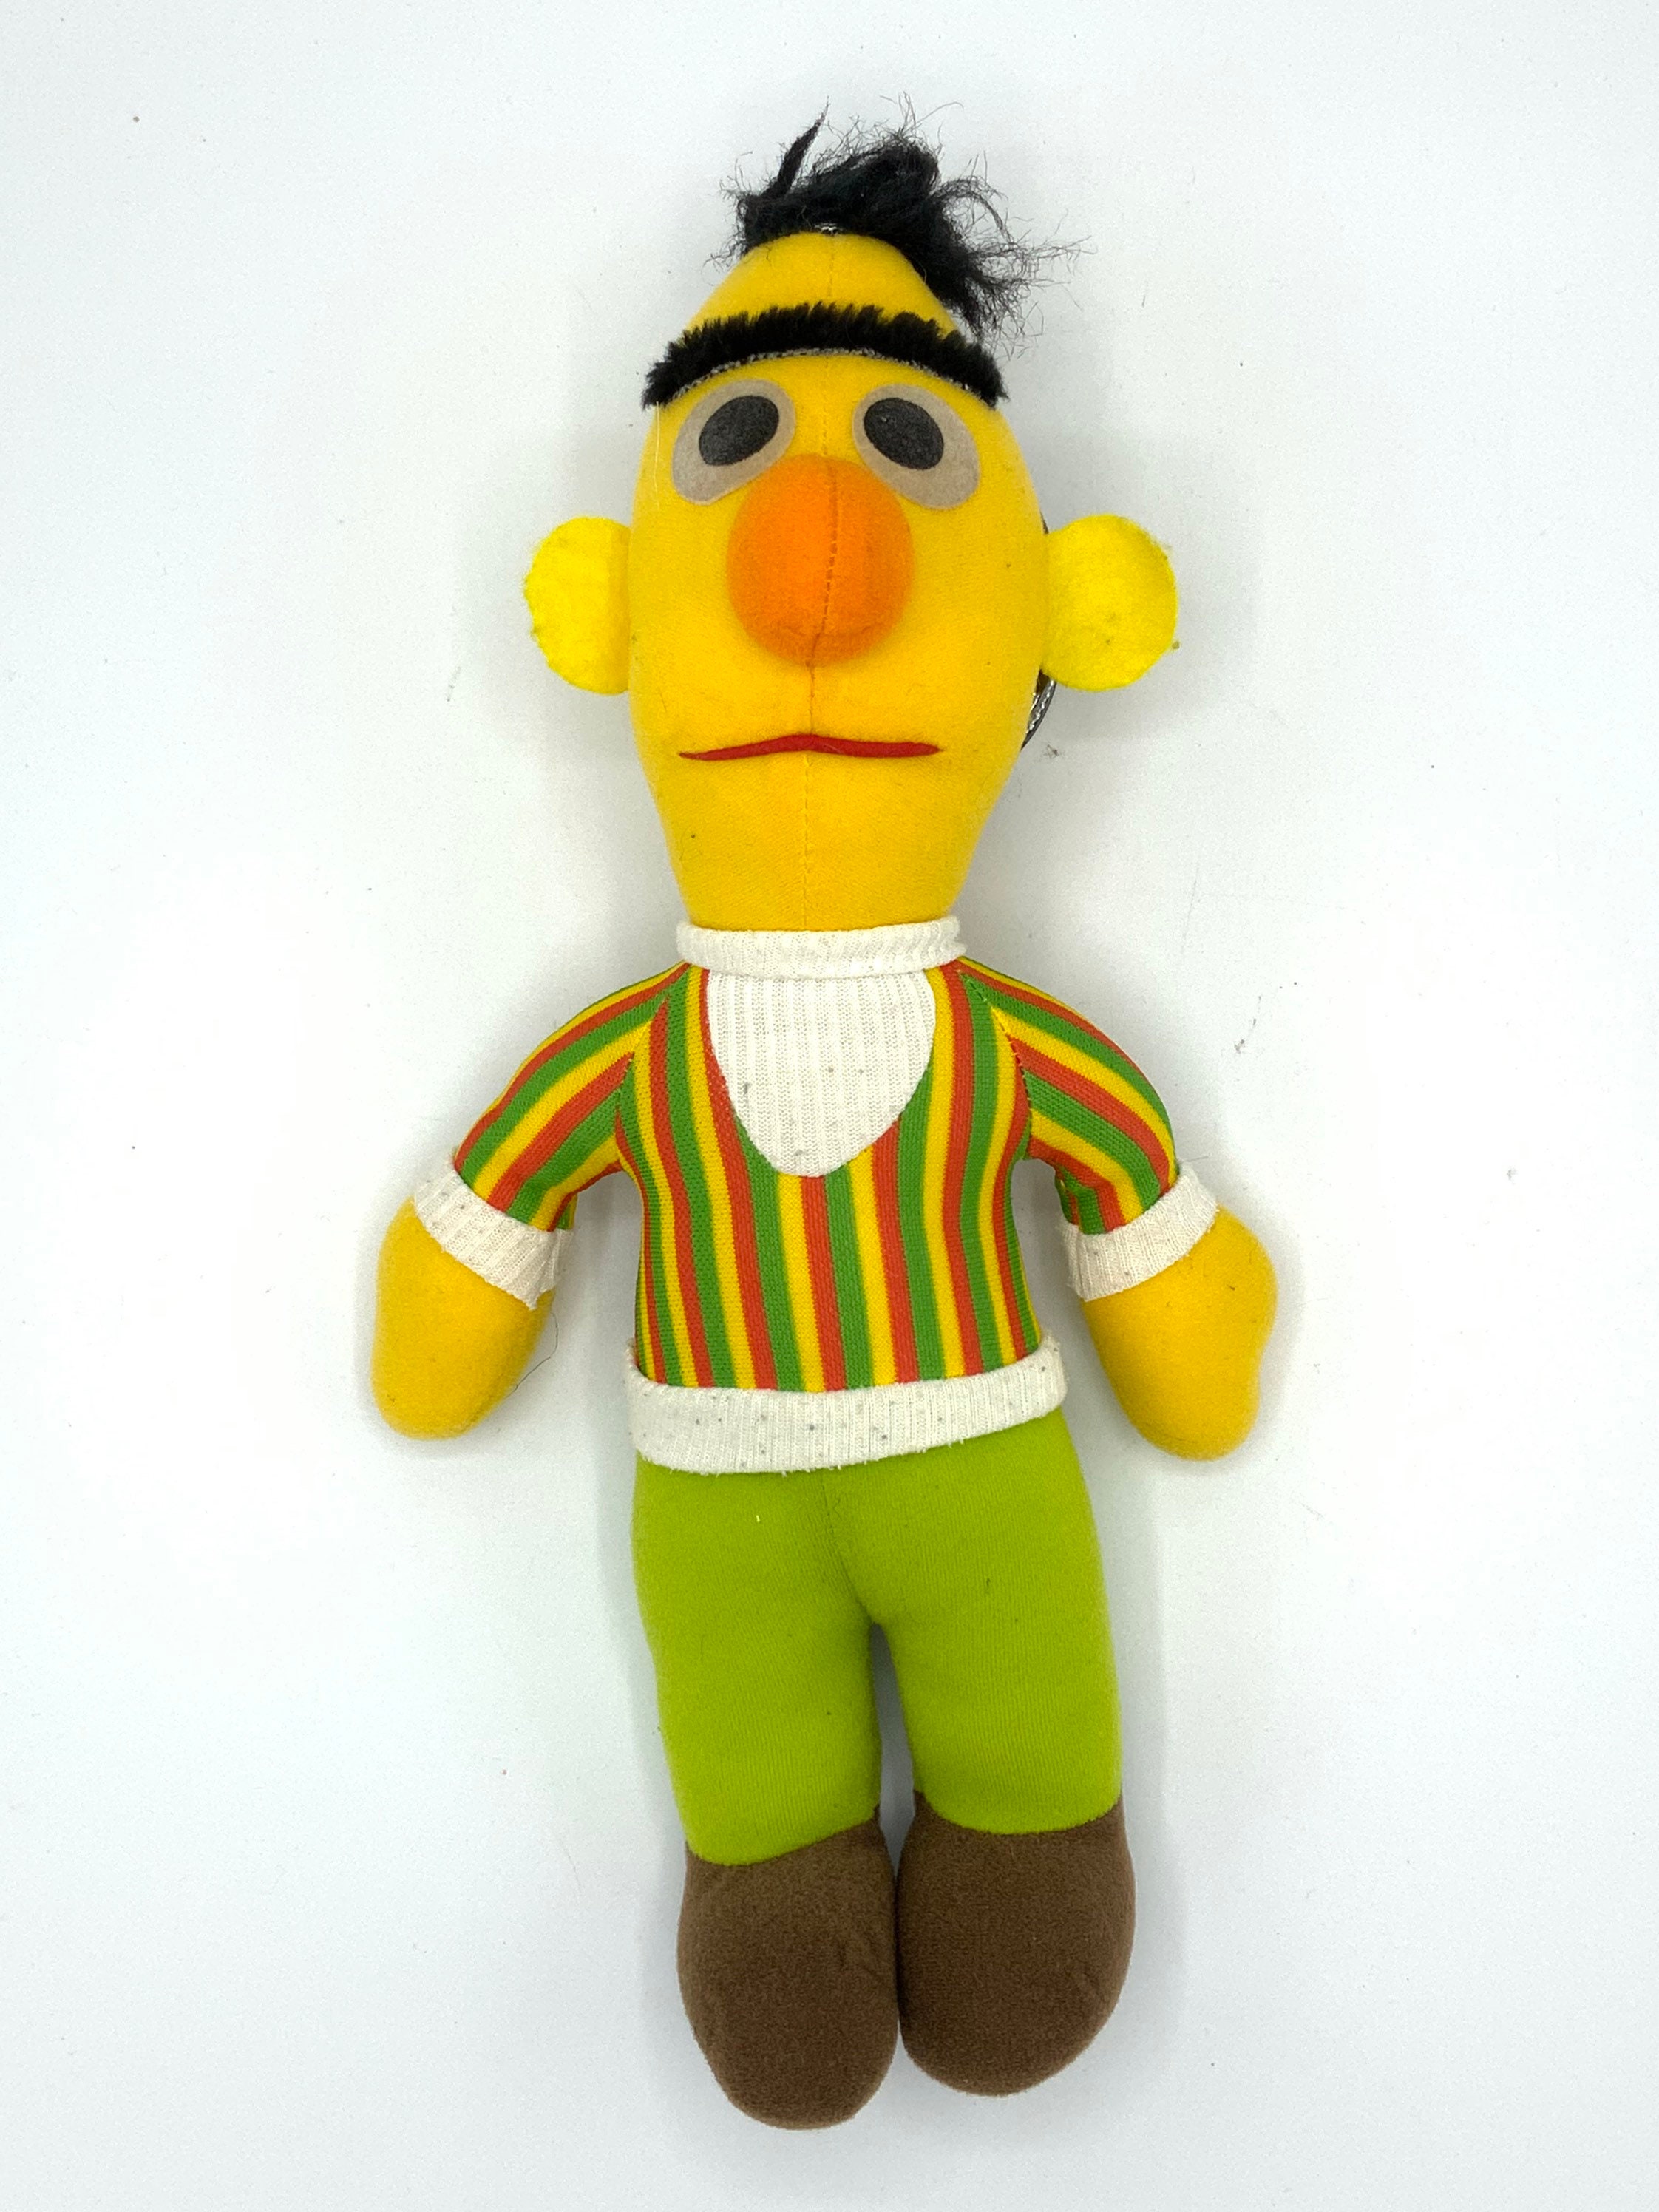 Ernie stuffed toy - Etsy